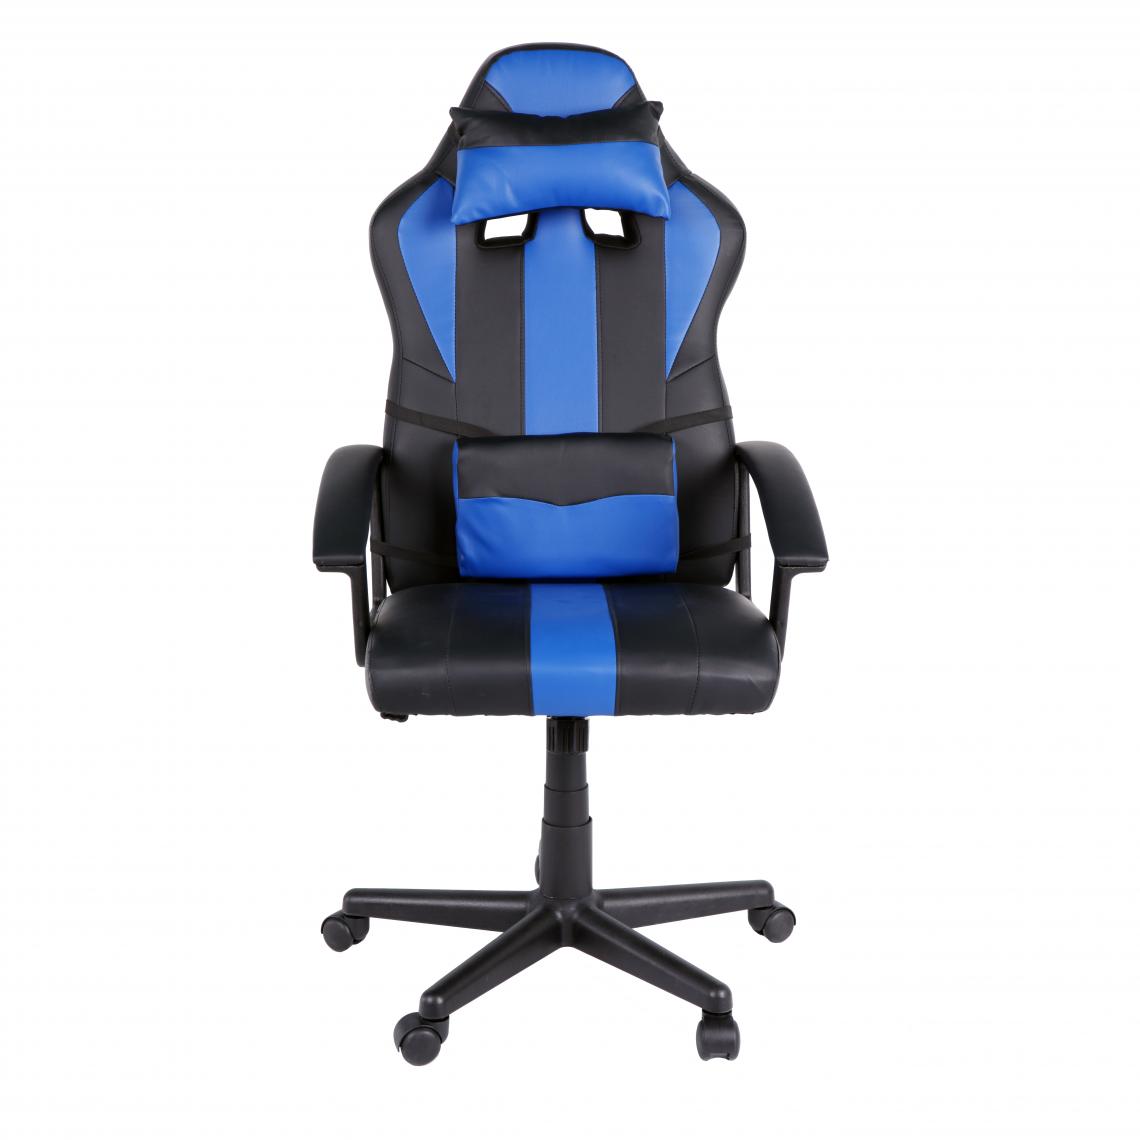 Beneffito - GHOST - Chaise de bureau GAMER - Bleu - Chaise gamer